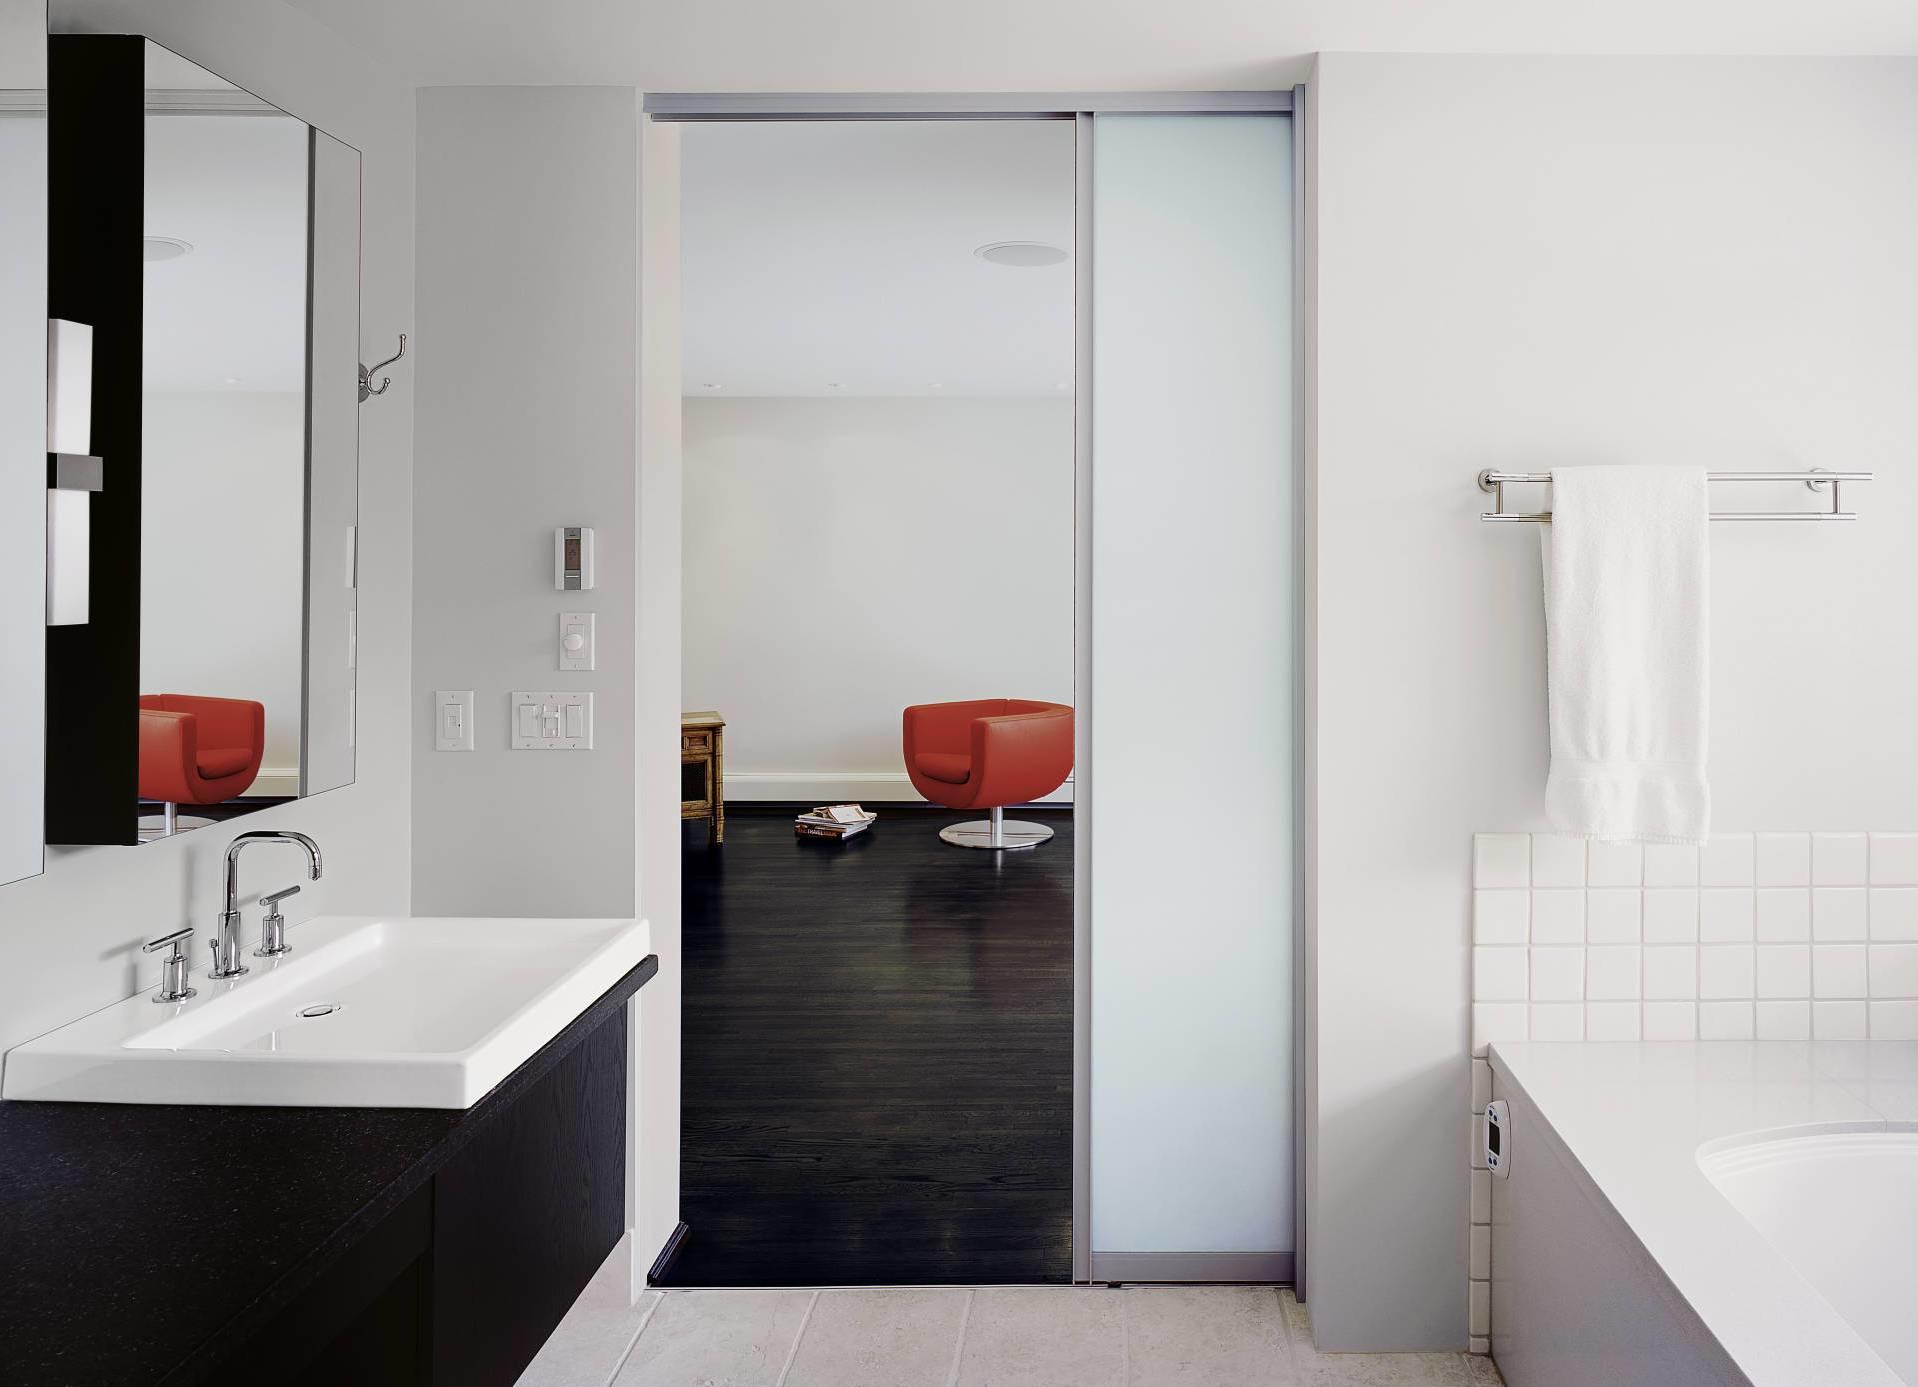 Раздвижные двери в ванную являются не только интересным дизайнерским решением, они еще и удобны в эксплуатации